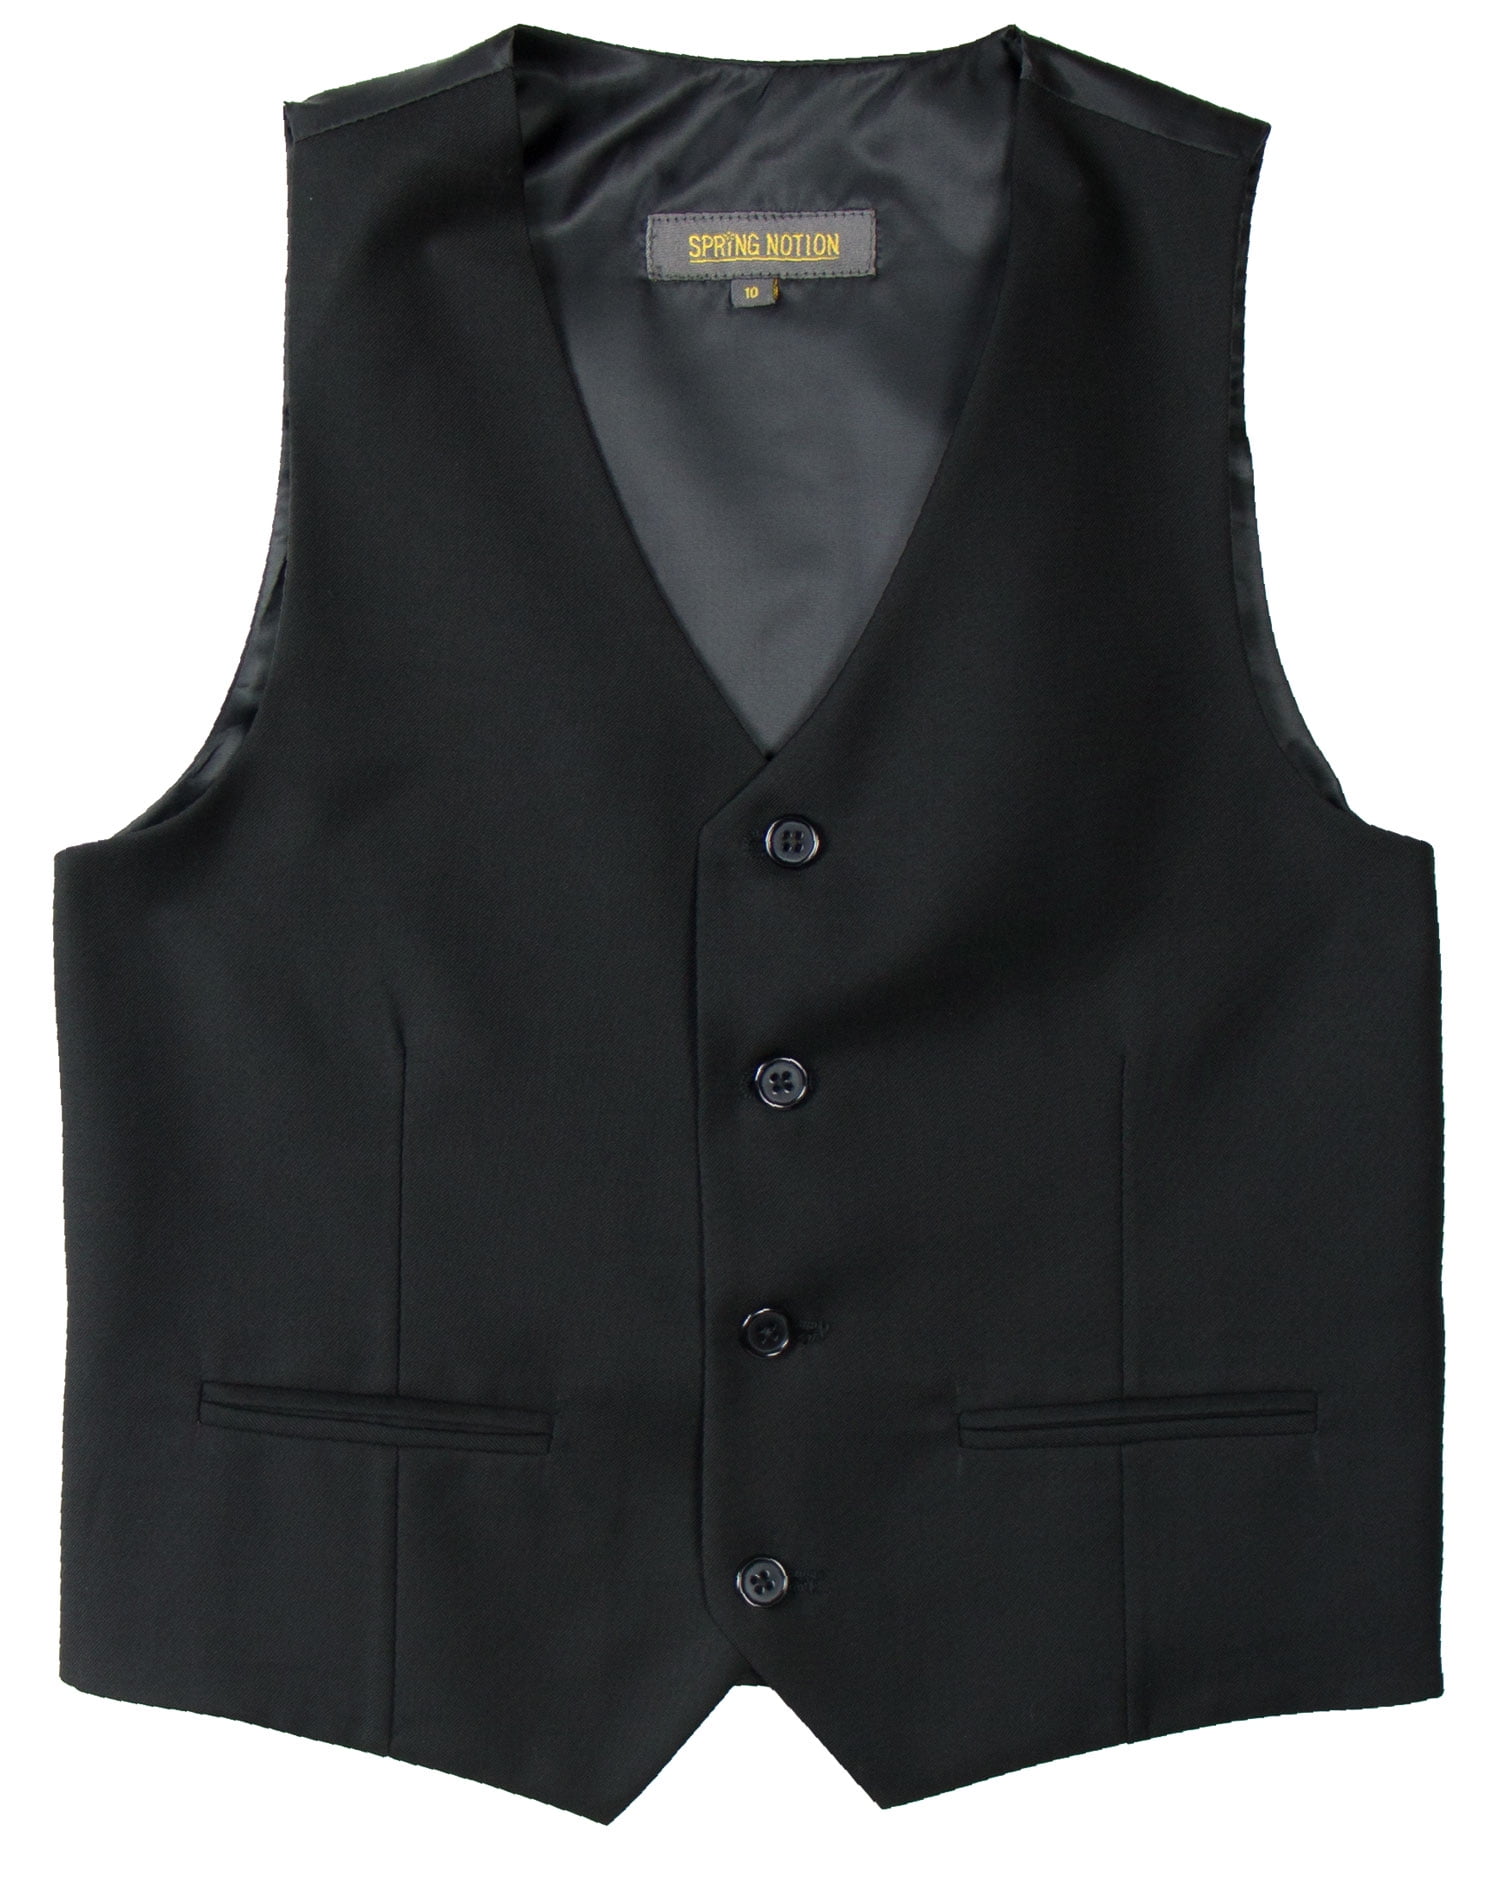 Spring Notion Big Boys' Two Button Suit Vest, Black - Walmart.com